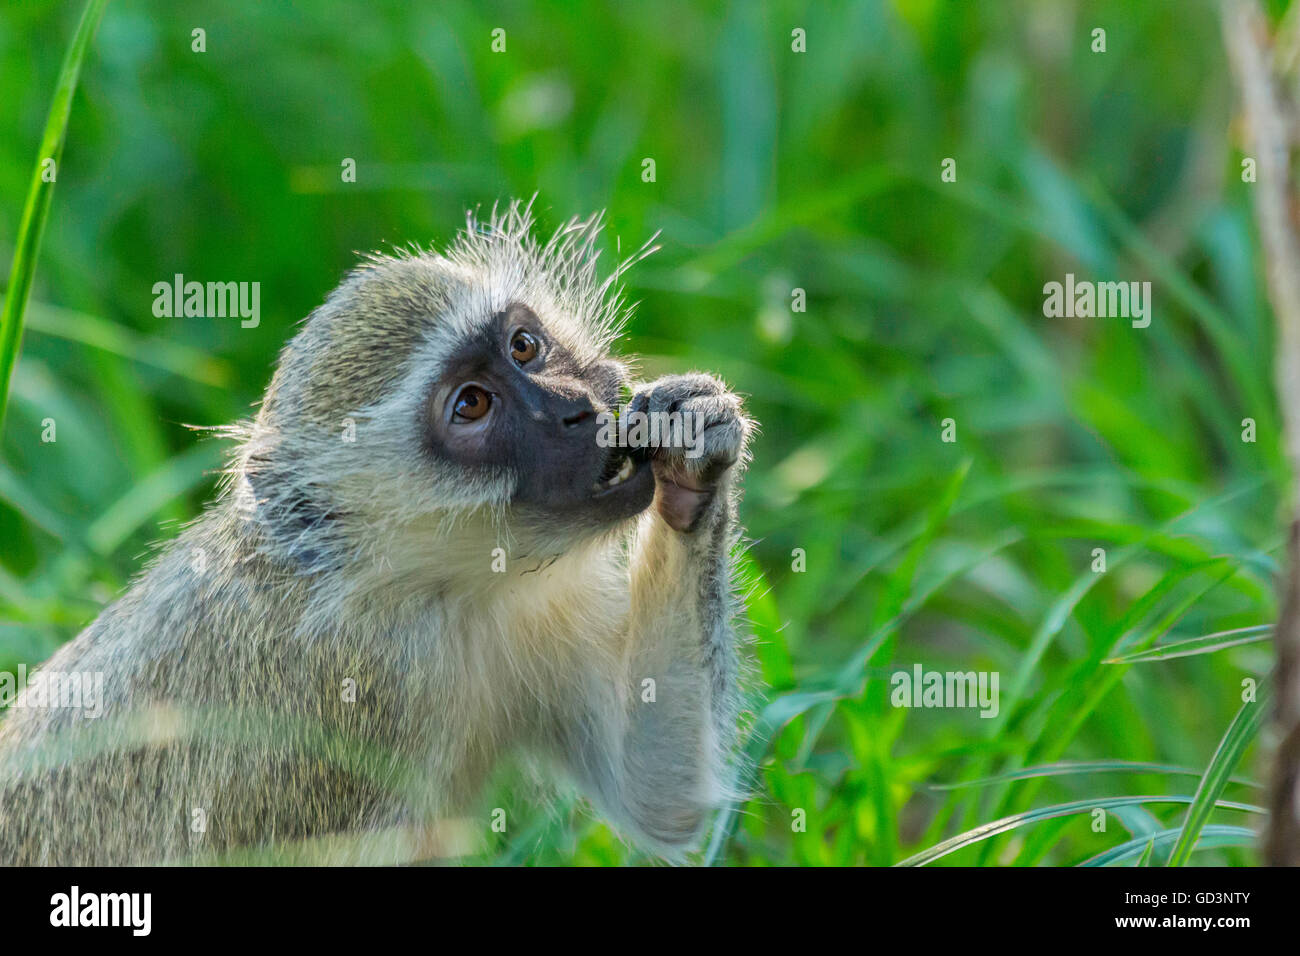 Un singe assis sur l'herbe verte Alimentation et montrant les dents Banque D'Images